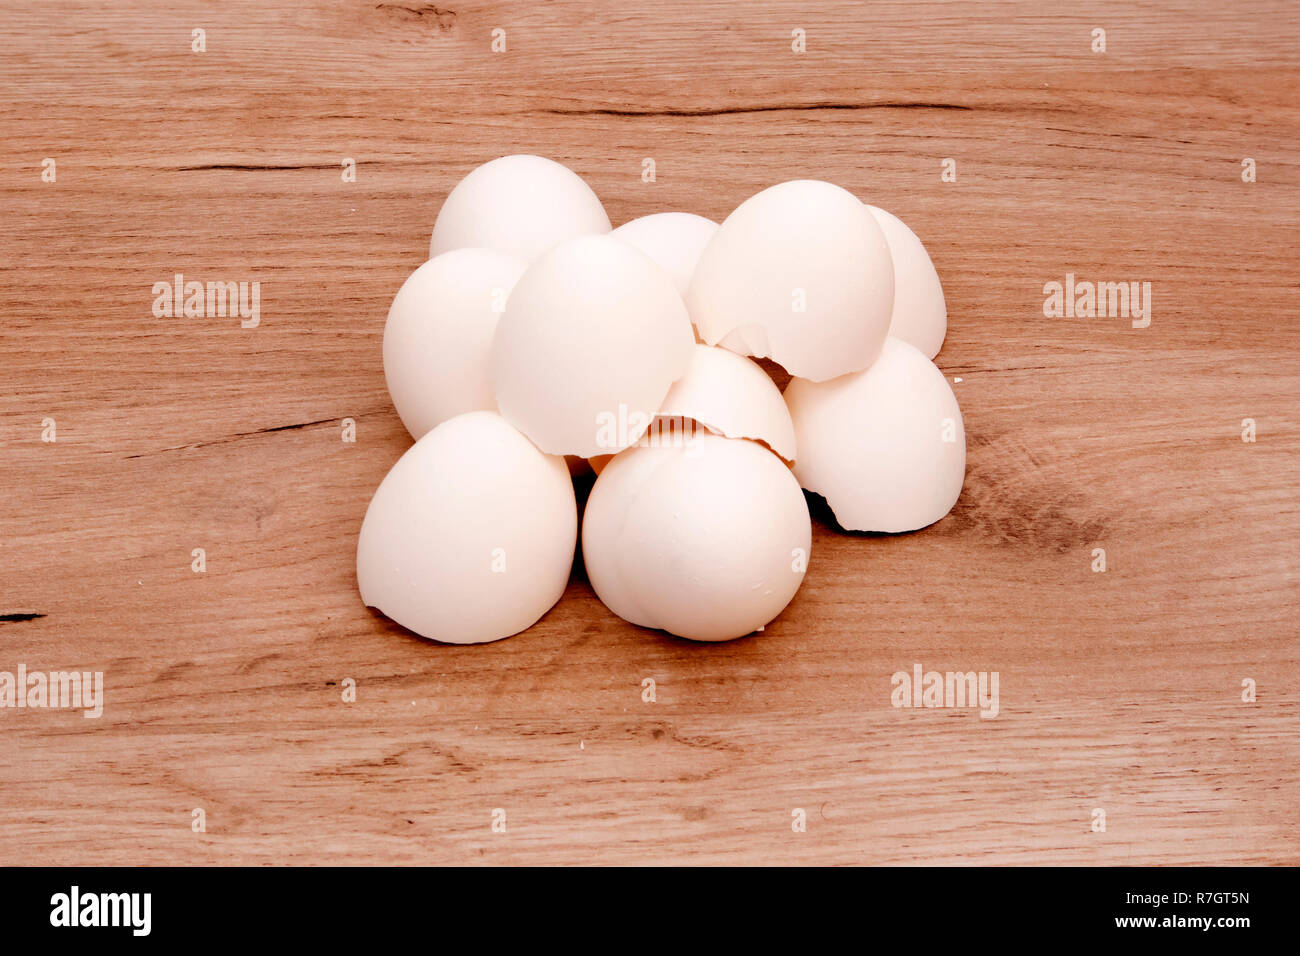 Ein Stapel der leeren weißen Eierschalen liegen auf einem Holzbrett Oberfläche Stockfoto